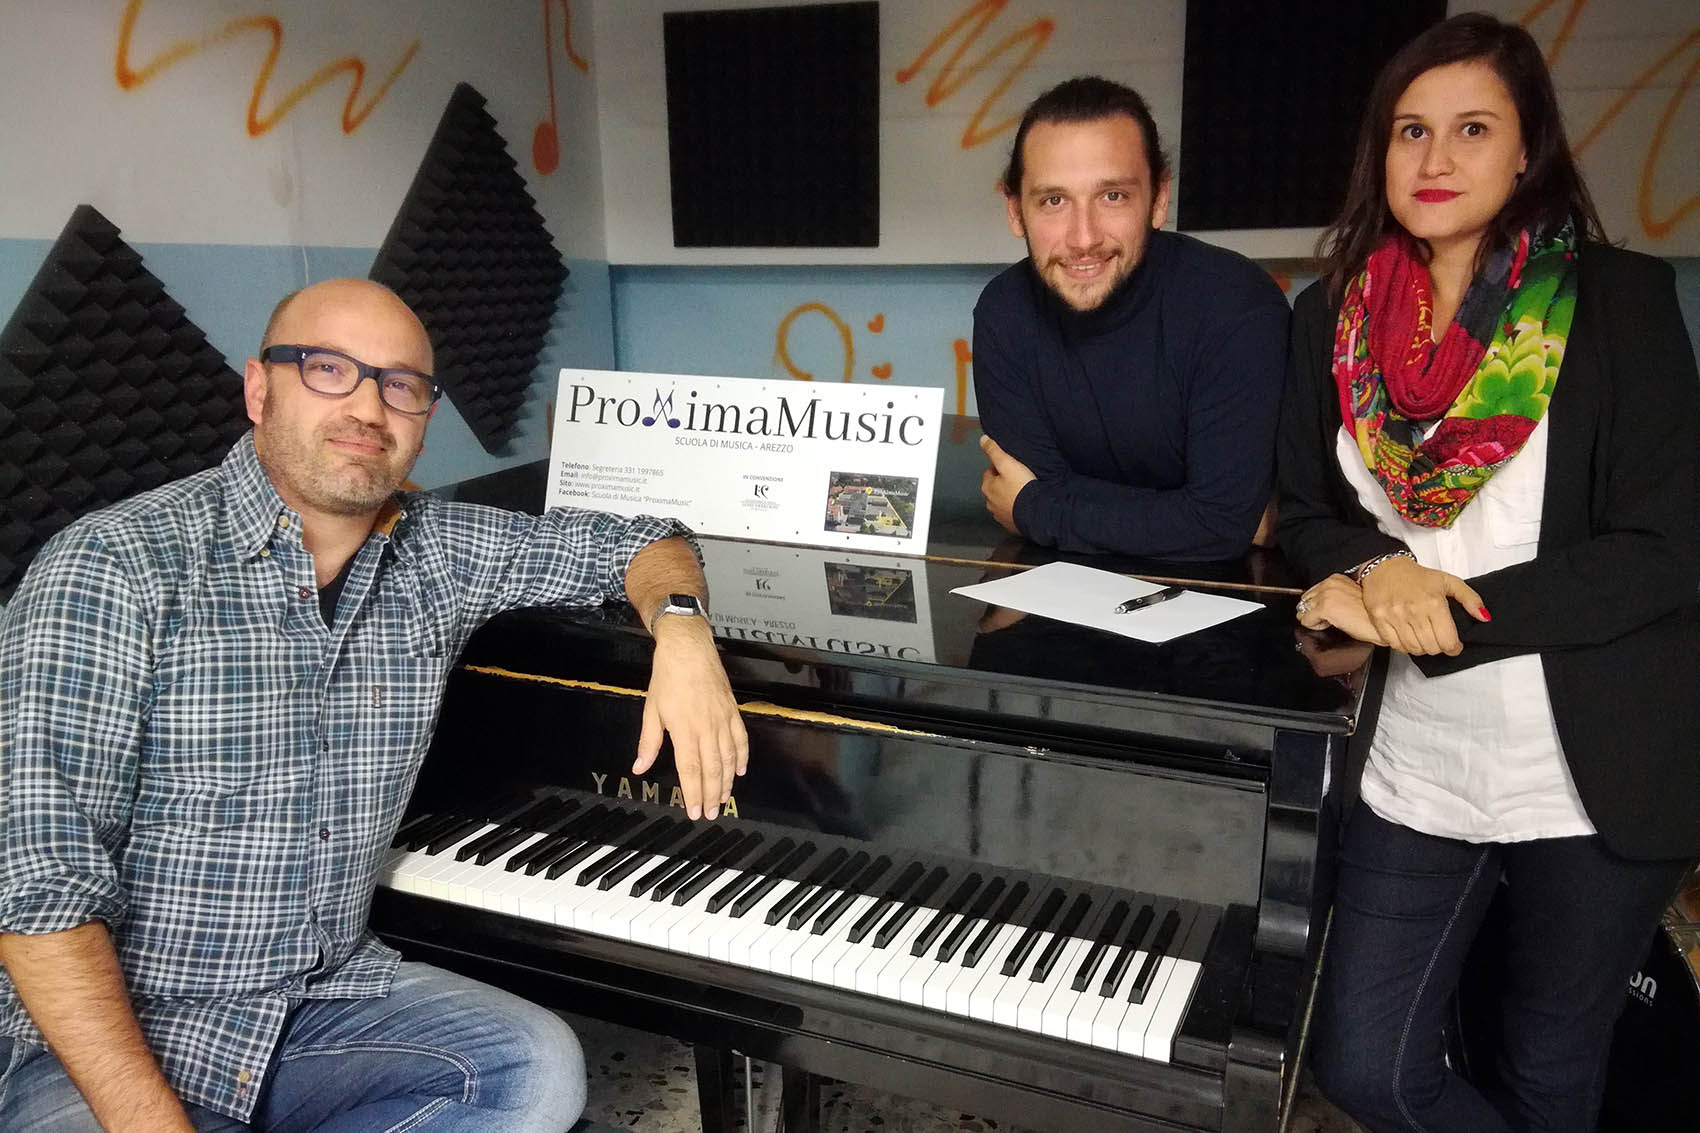 Scrittura creativa, Proxima Music ospita l’Open Day del nuovo corso